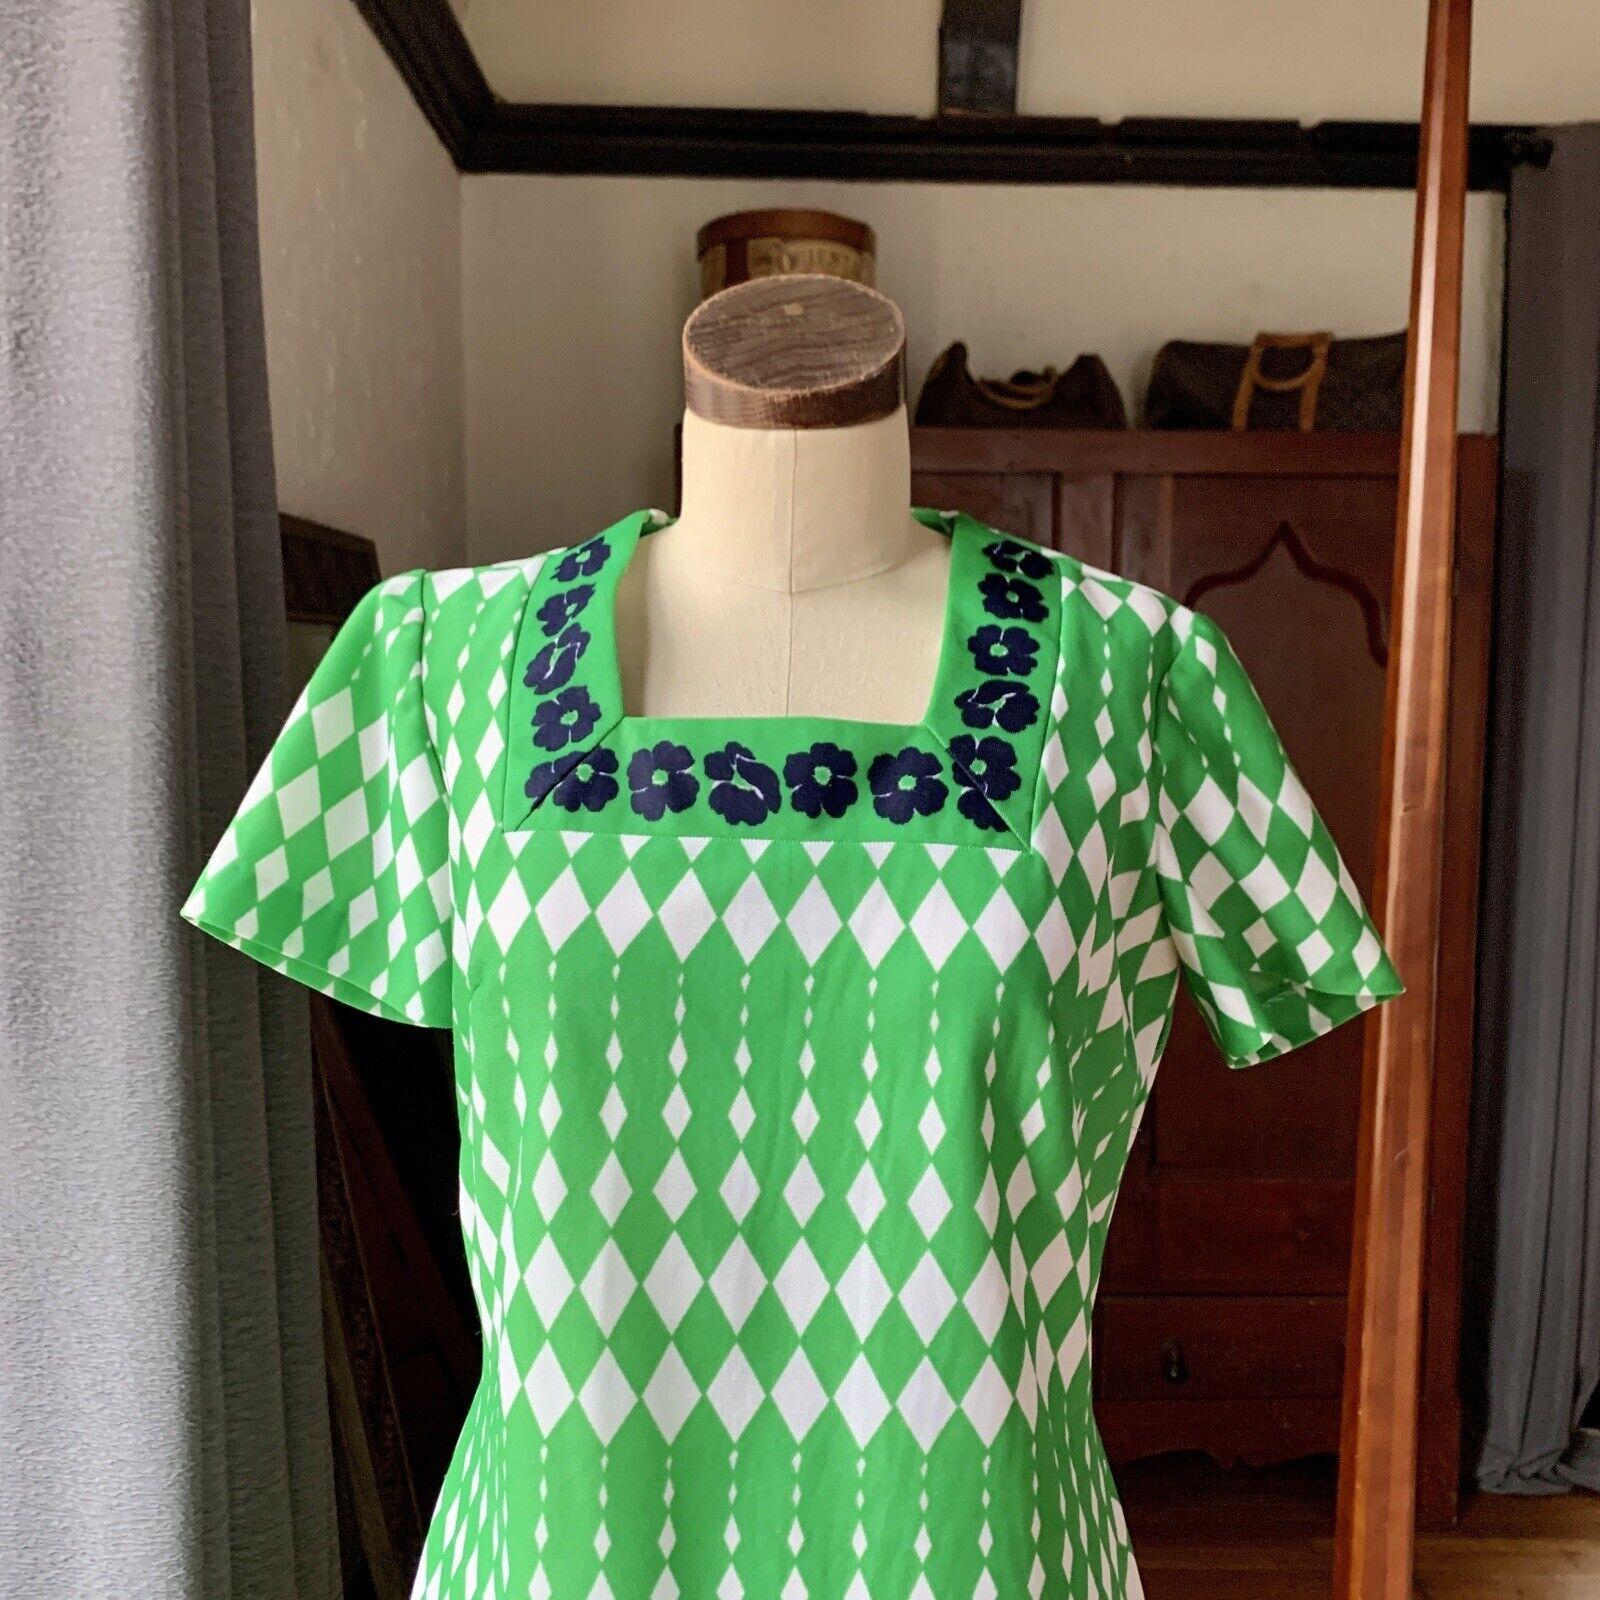 Vintage Mod Grünes Kleid, Rauten- und Blumendruck, Polyester, Metallreißverschluss am Rücken, mit Abnähern, kurze Ärmel, wadenlang, toll für den Frühling!

Abmessungen Flach liegend:
Büste 18